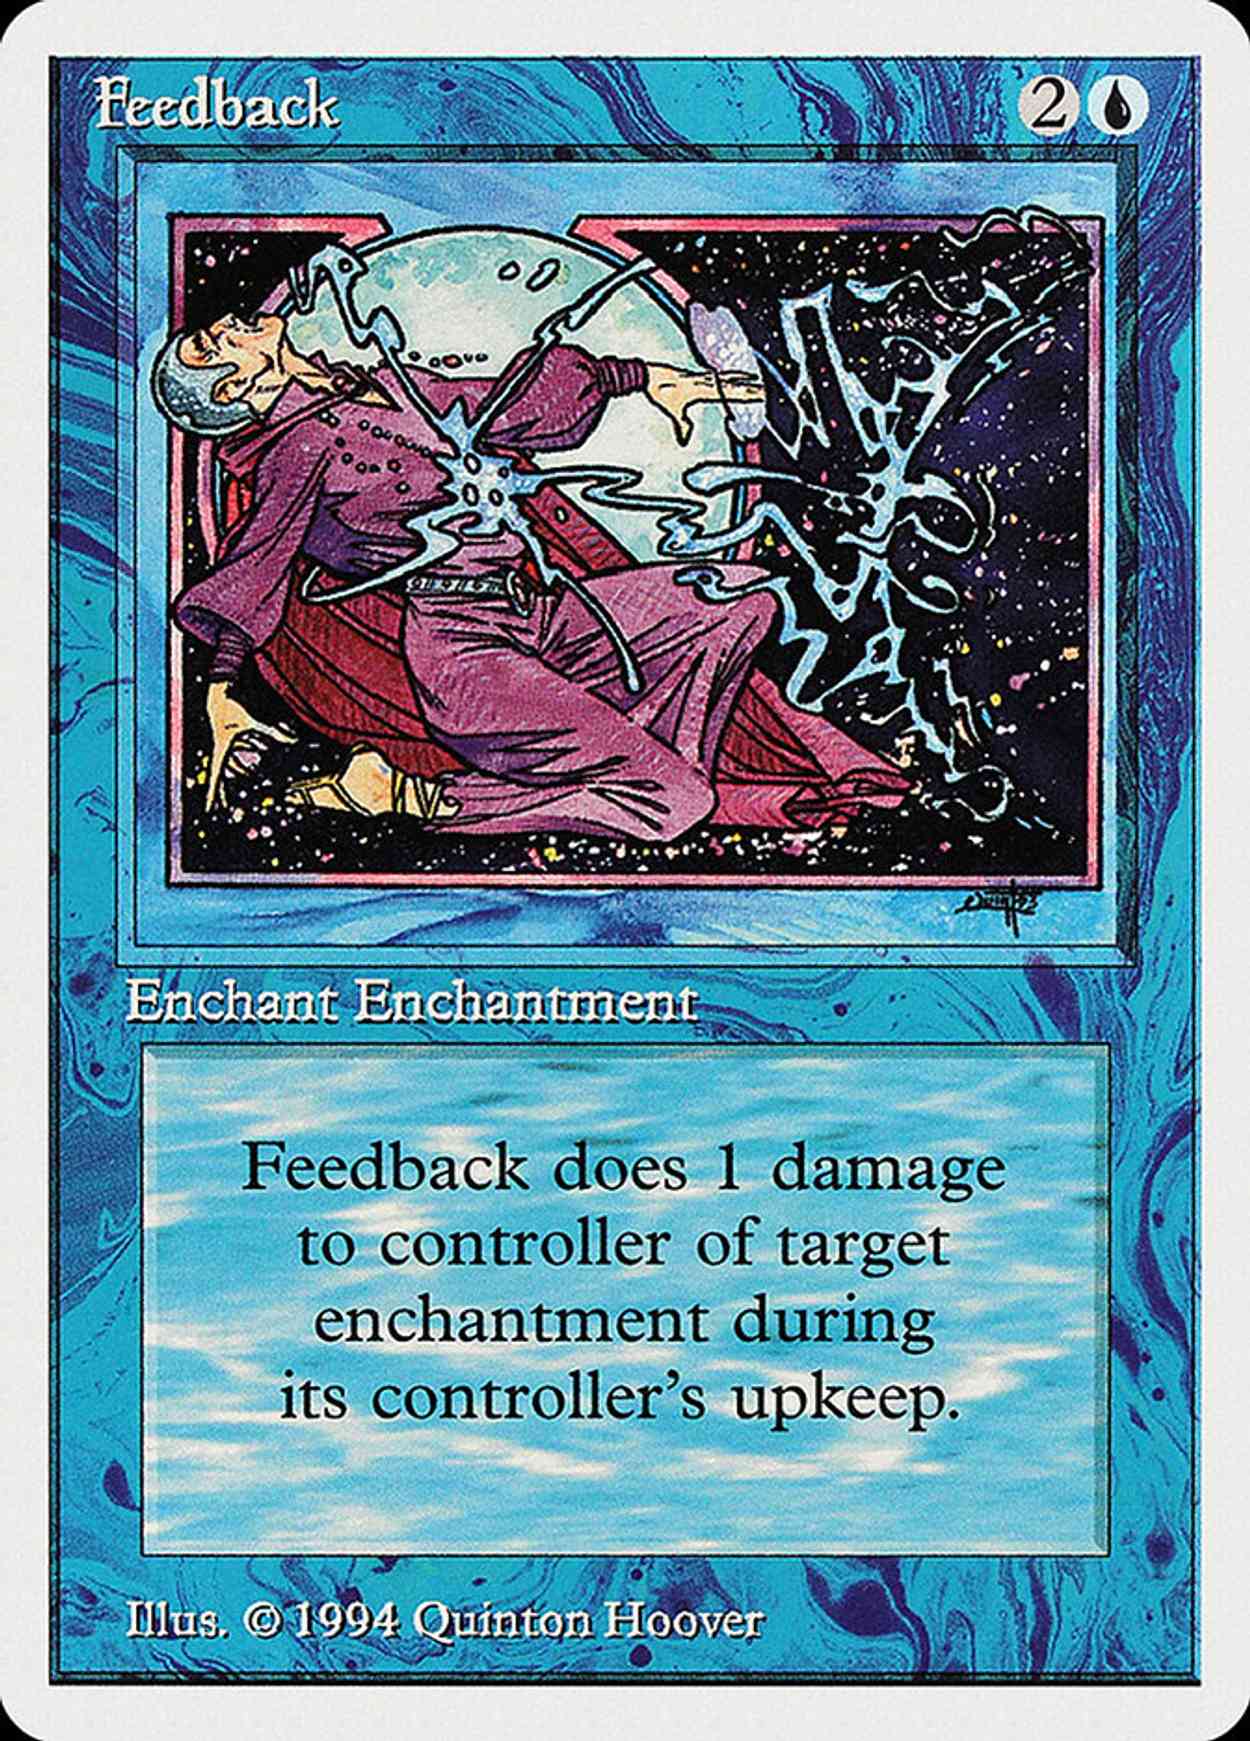 Feedback magic card front